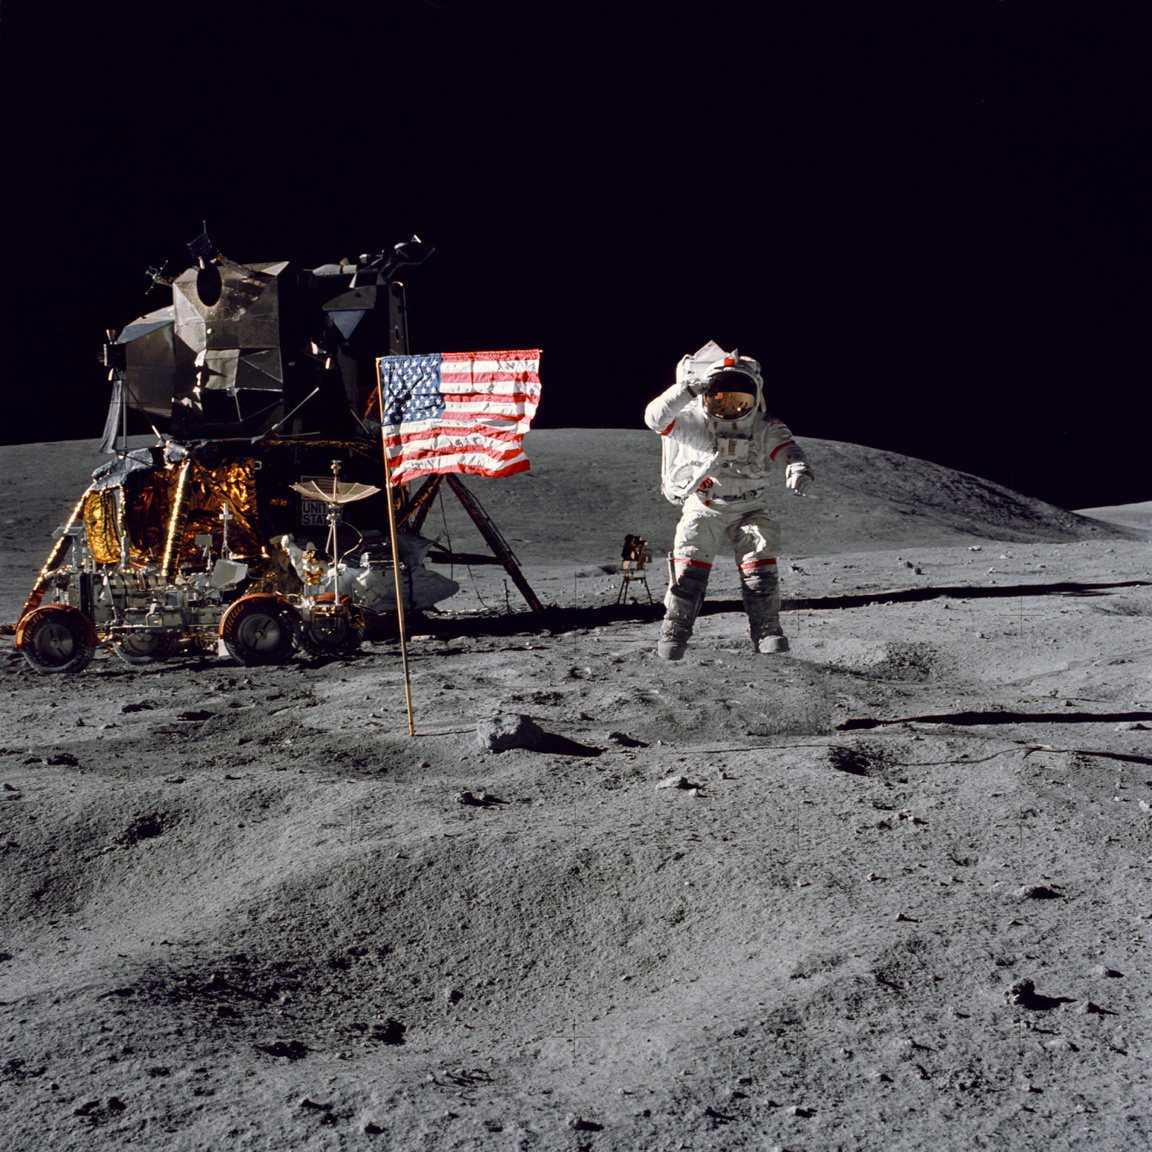 Bár a játékfilmekből azt hihetjük, hogy az űrhajósok első dolga volt a holdraszállás után felállítani az amerikai zászlót és felvételeket készíteni vele, ez nem igaz. Első lépésként a holdjárót kellett összeállítani, majd kipakolni a felszerelést és beállítani a mérőeszközöket. Az Amerikai Egyesült Államok zászlajának felállítása valójában az utolsó holdkomp körüli teendő volt. A fotó készültekor John W. Young parancsnok tréfásan felugrott, így lebegve tiszteleg az amerikai zászló előtt. Háttérben balra látható a holdautó, mögötte a holdkomp.
                        